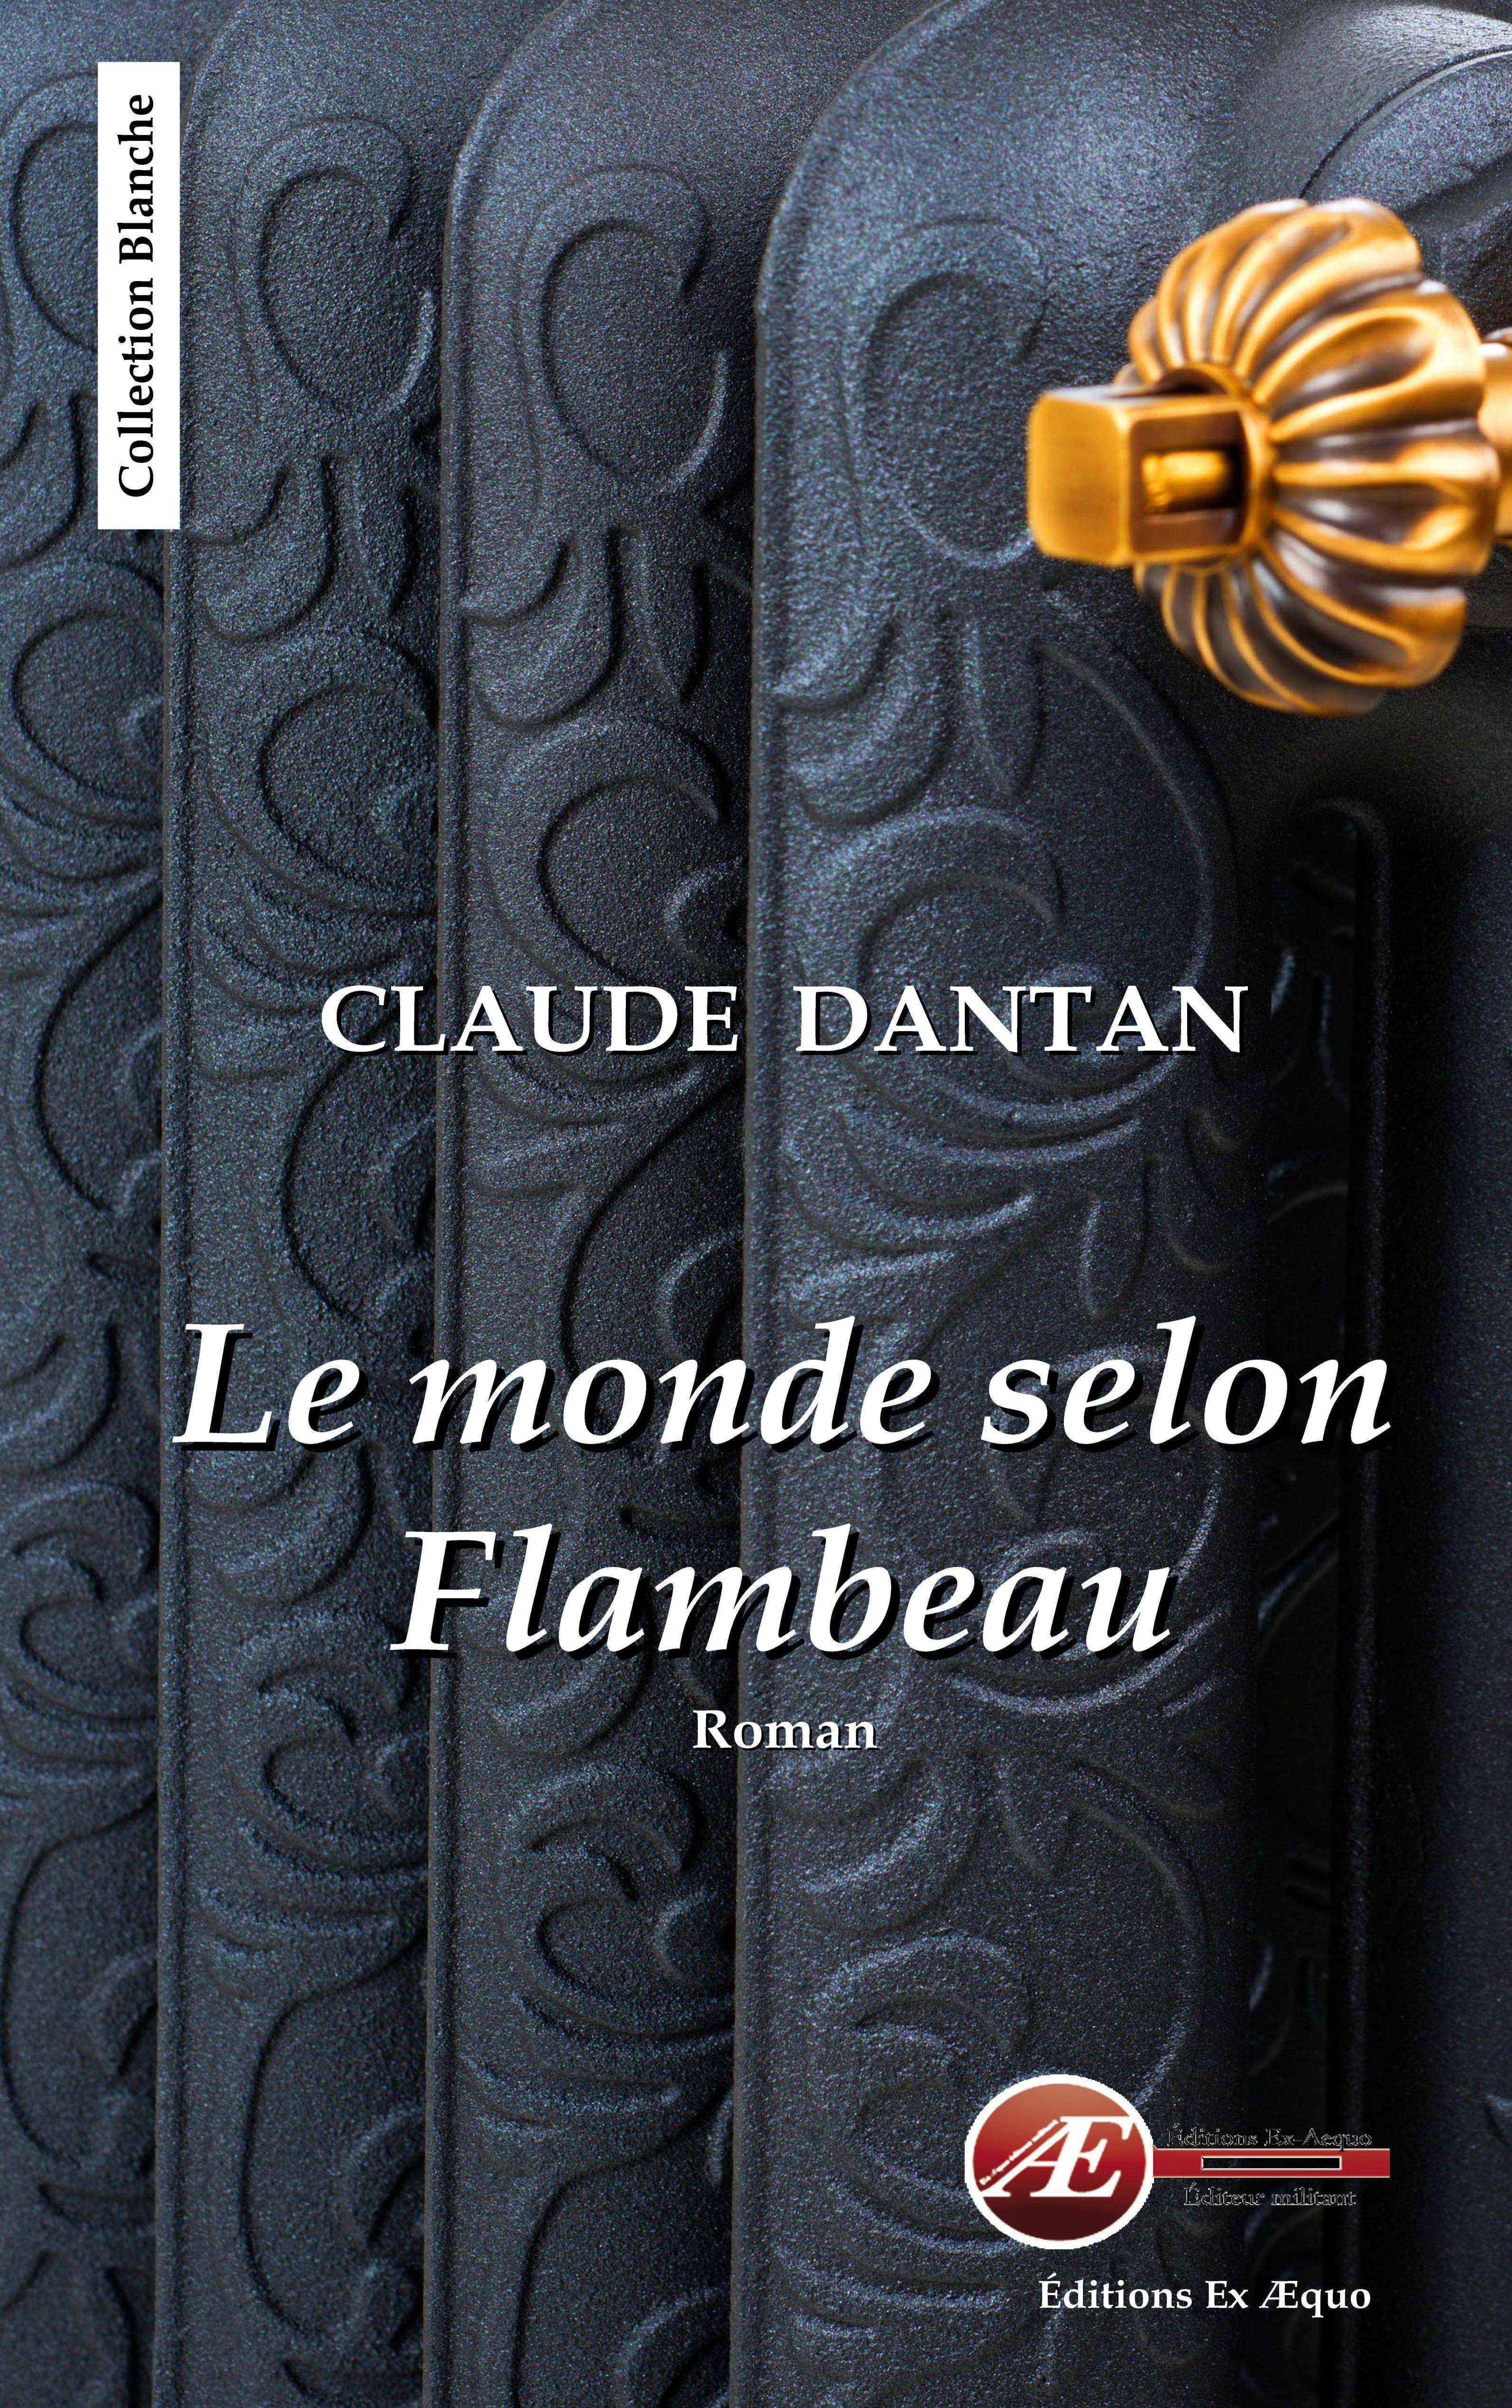 You are currently viewing Le monde selon Flambeau, de Claude Dantan